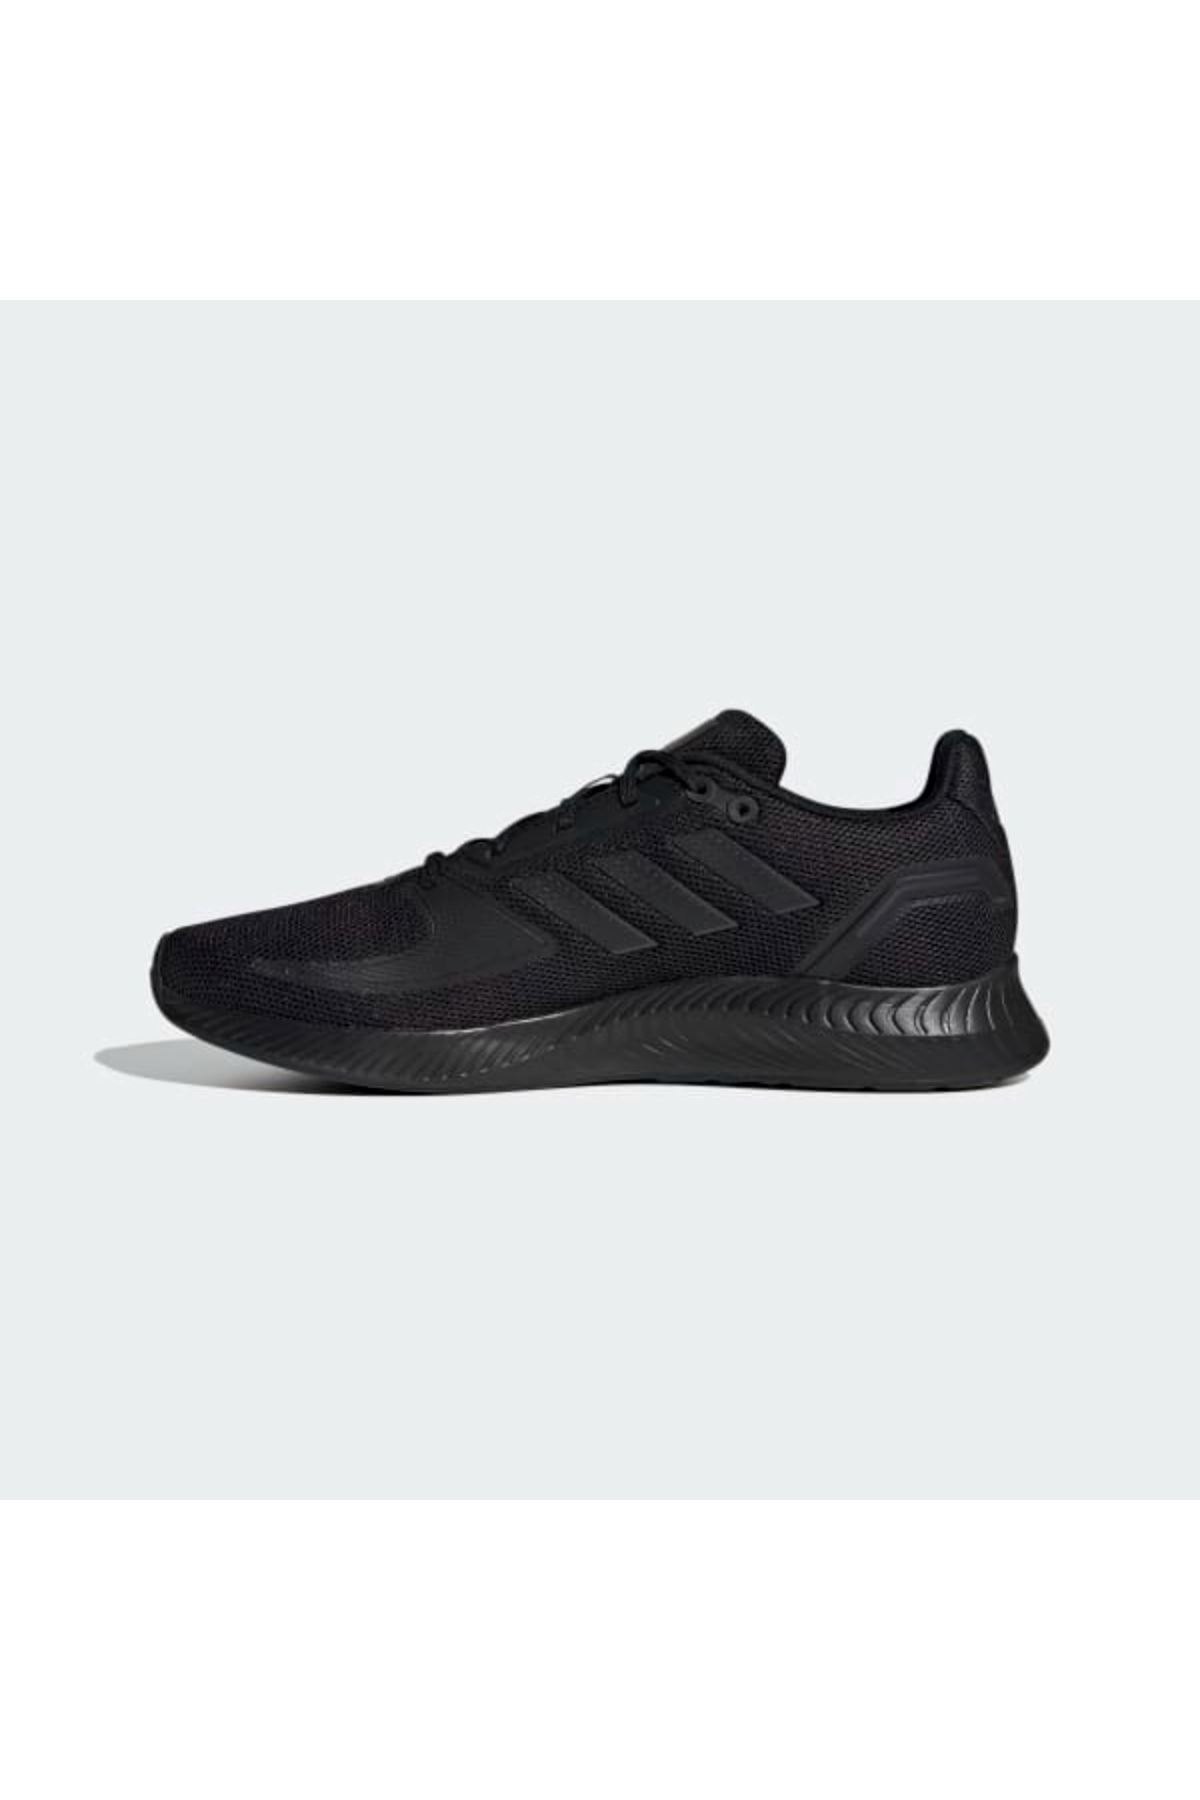 Adidas Runfalcon 2.0 Erkek Siyah Spor Ayakkabı - G58096